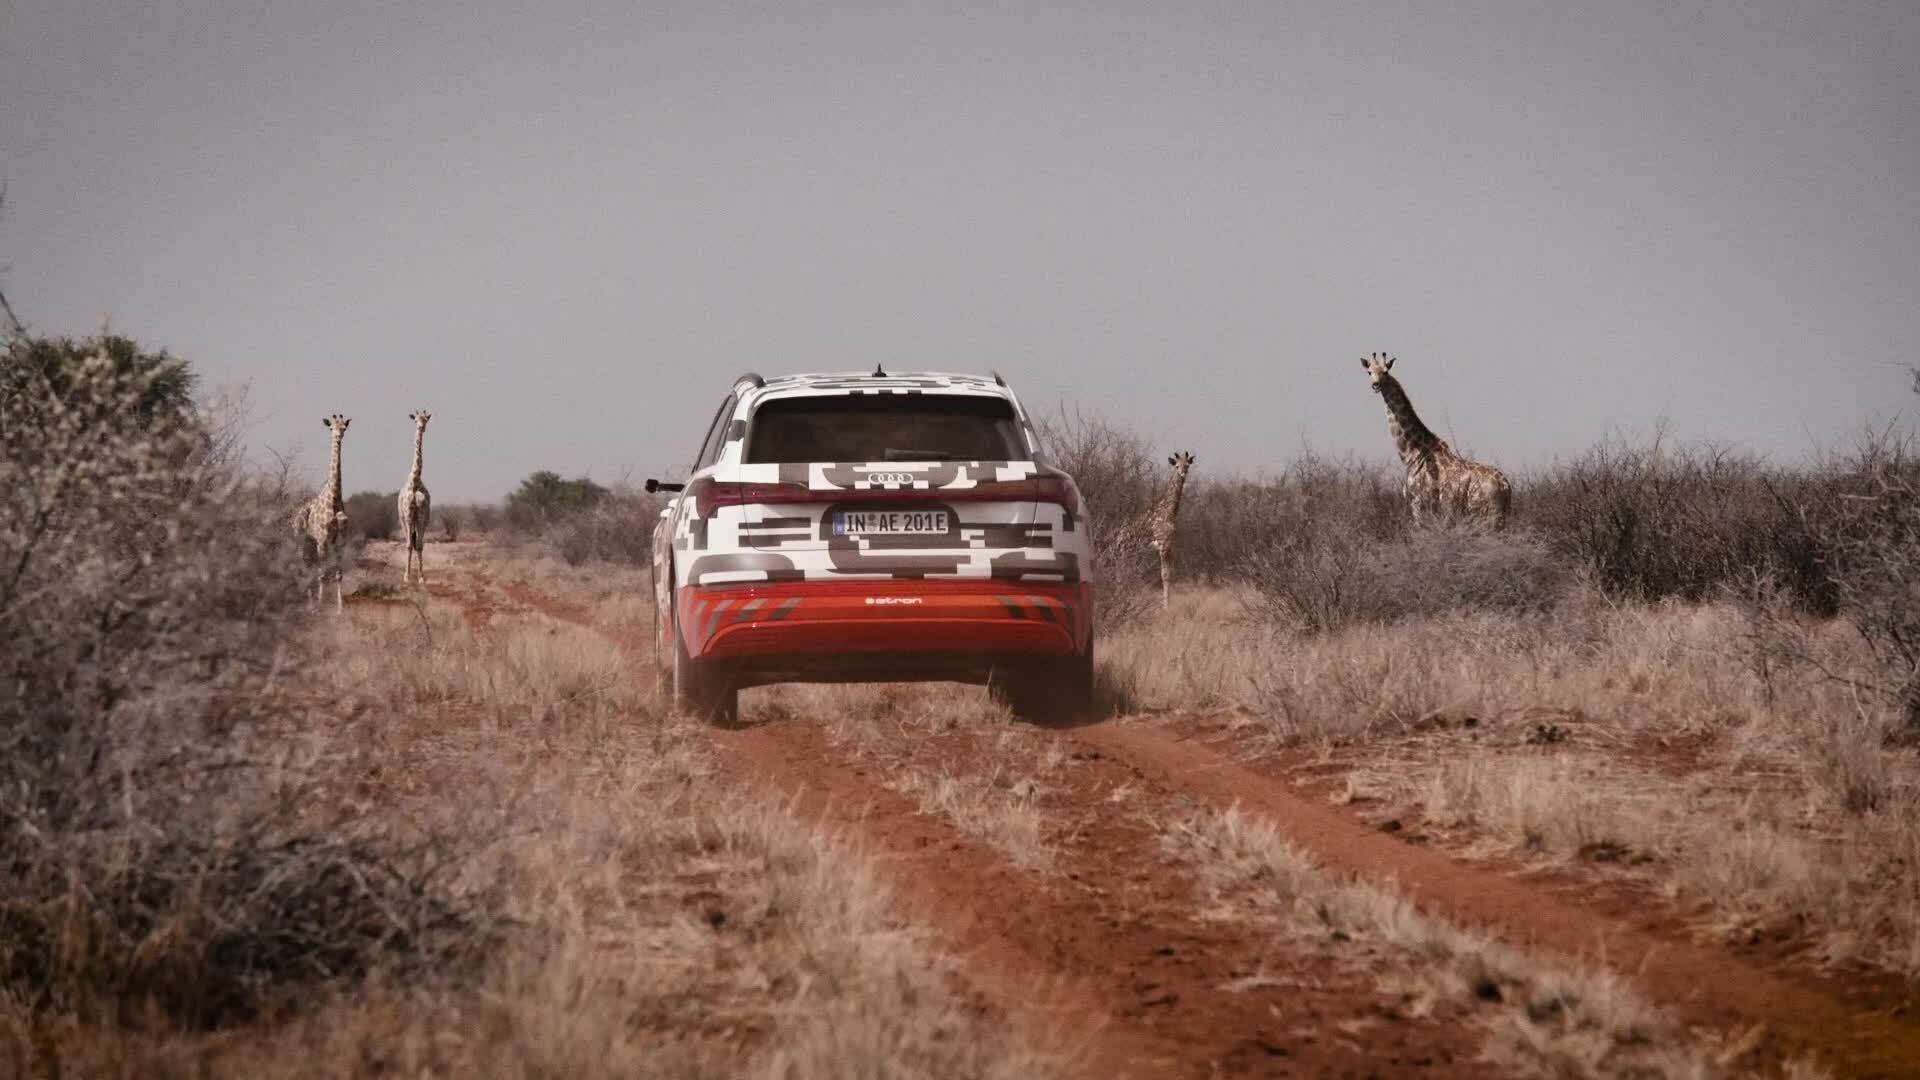 Power play: The Audi e-tron prototype in Namibia